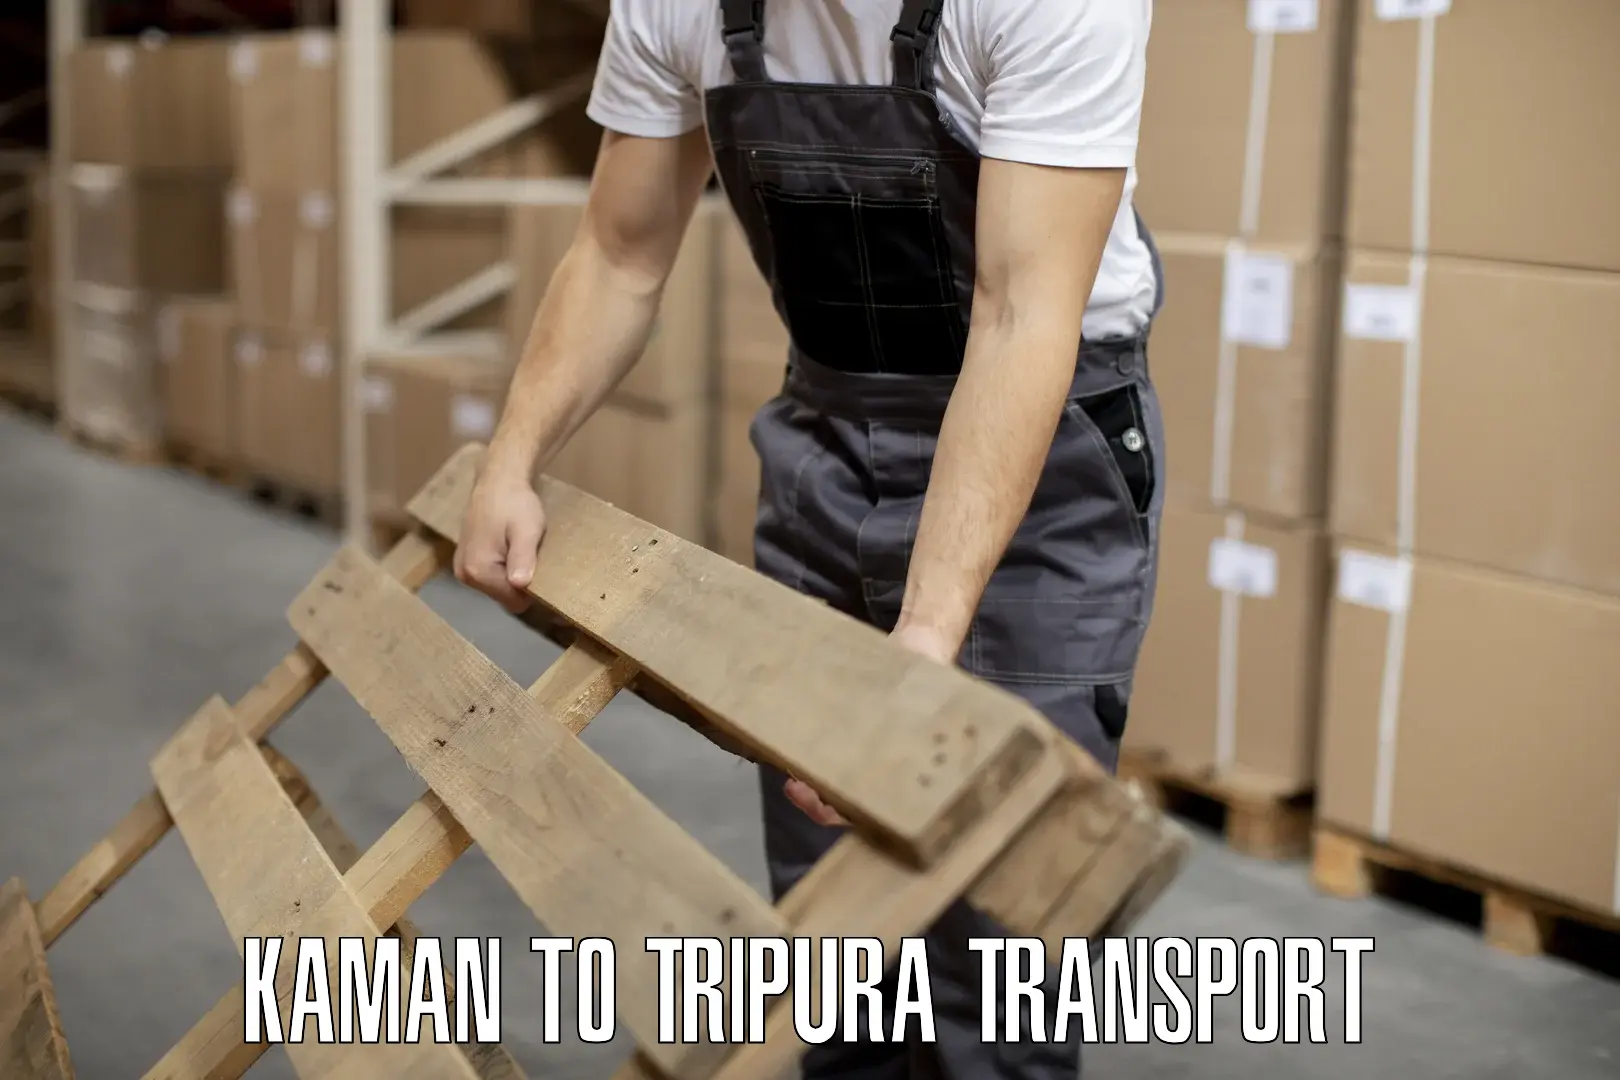 Daily transport service Kaman to Teliamura